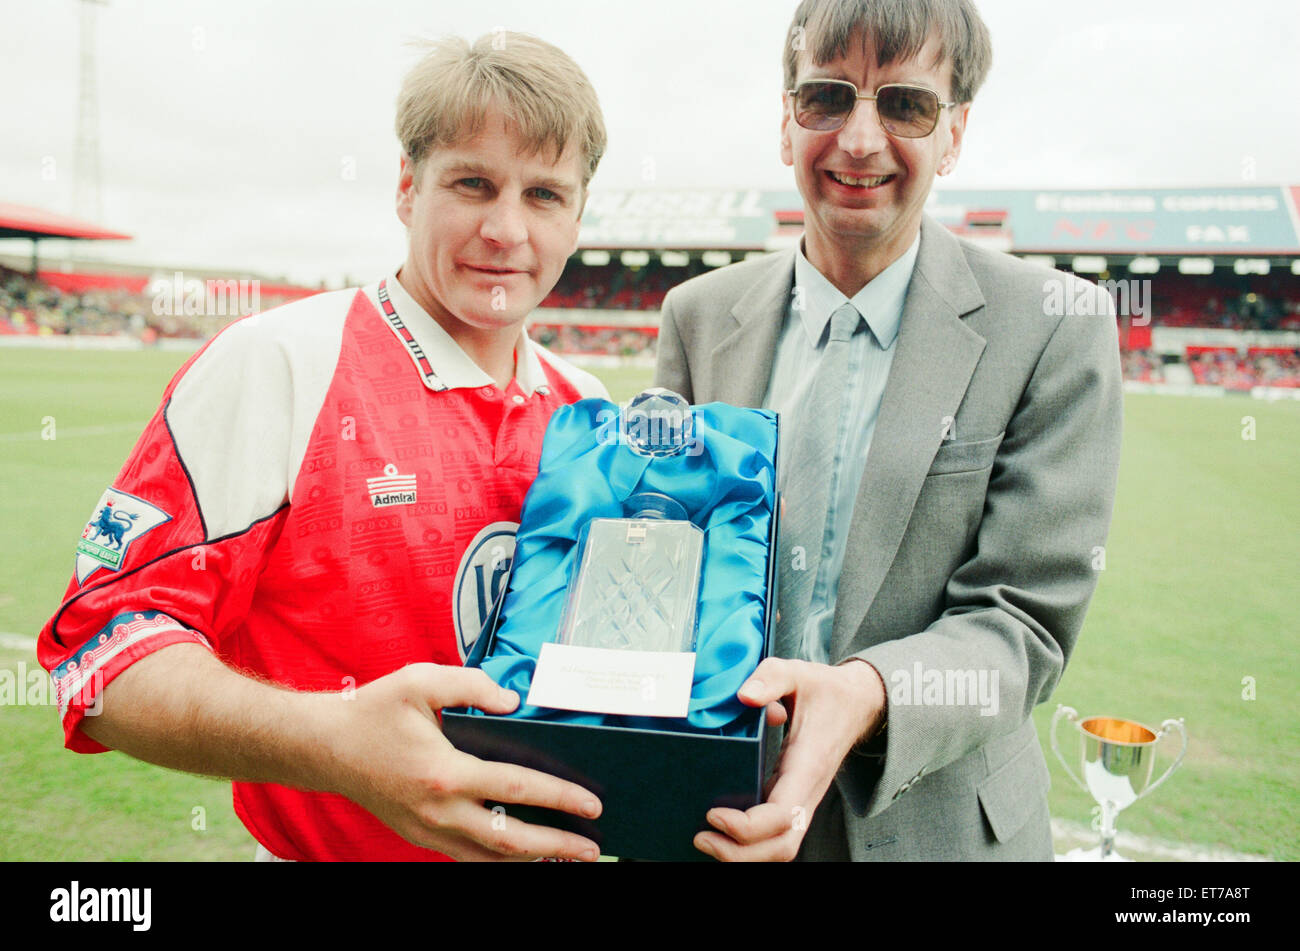 John Hendrie, Middlesbrough giocatore di calcio 1990-1996, receves l'ICI giocatore del premio di anno da Keith Stockdale, un Billingham opere empployee, a Ayresome Park, 9 maggio 1993. Foto Stock